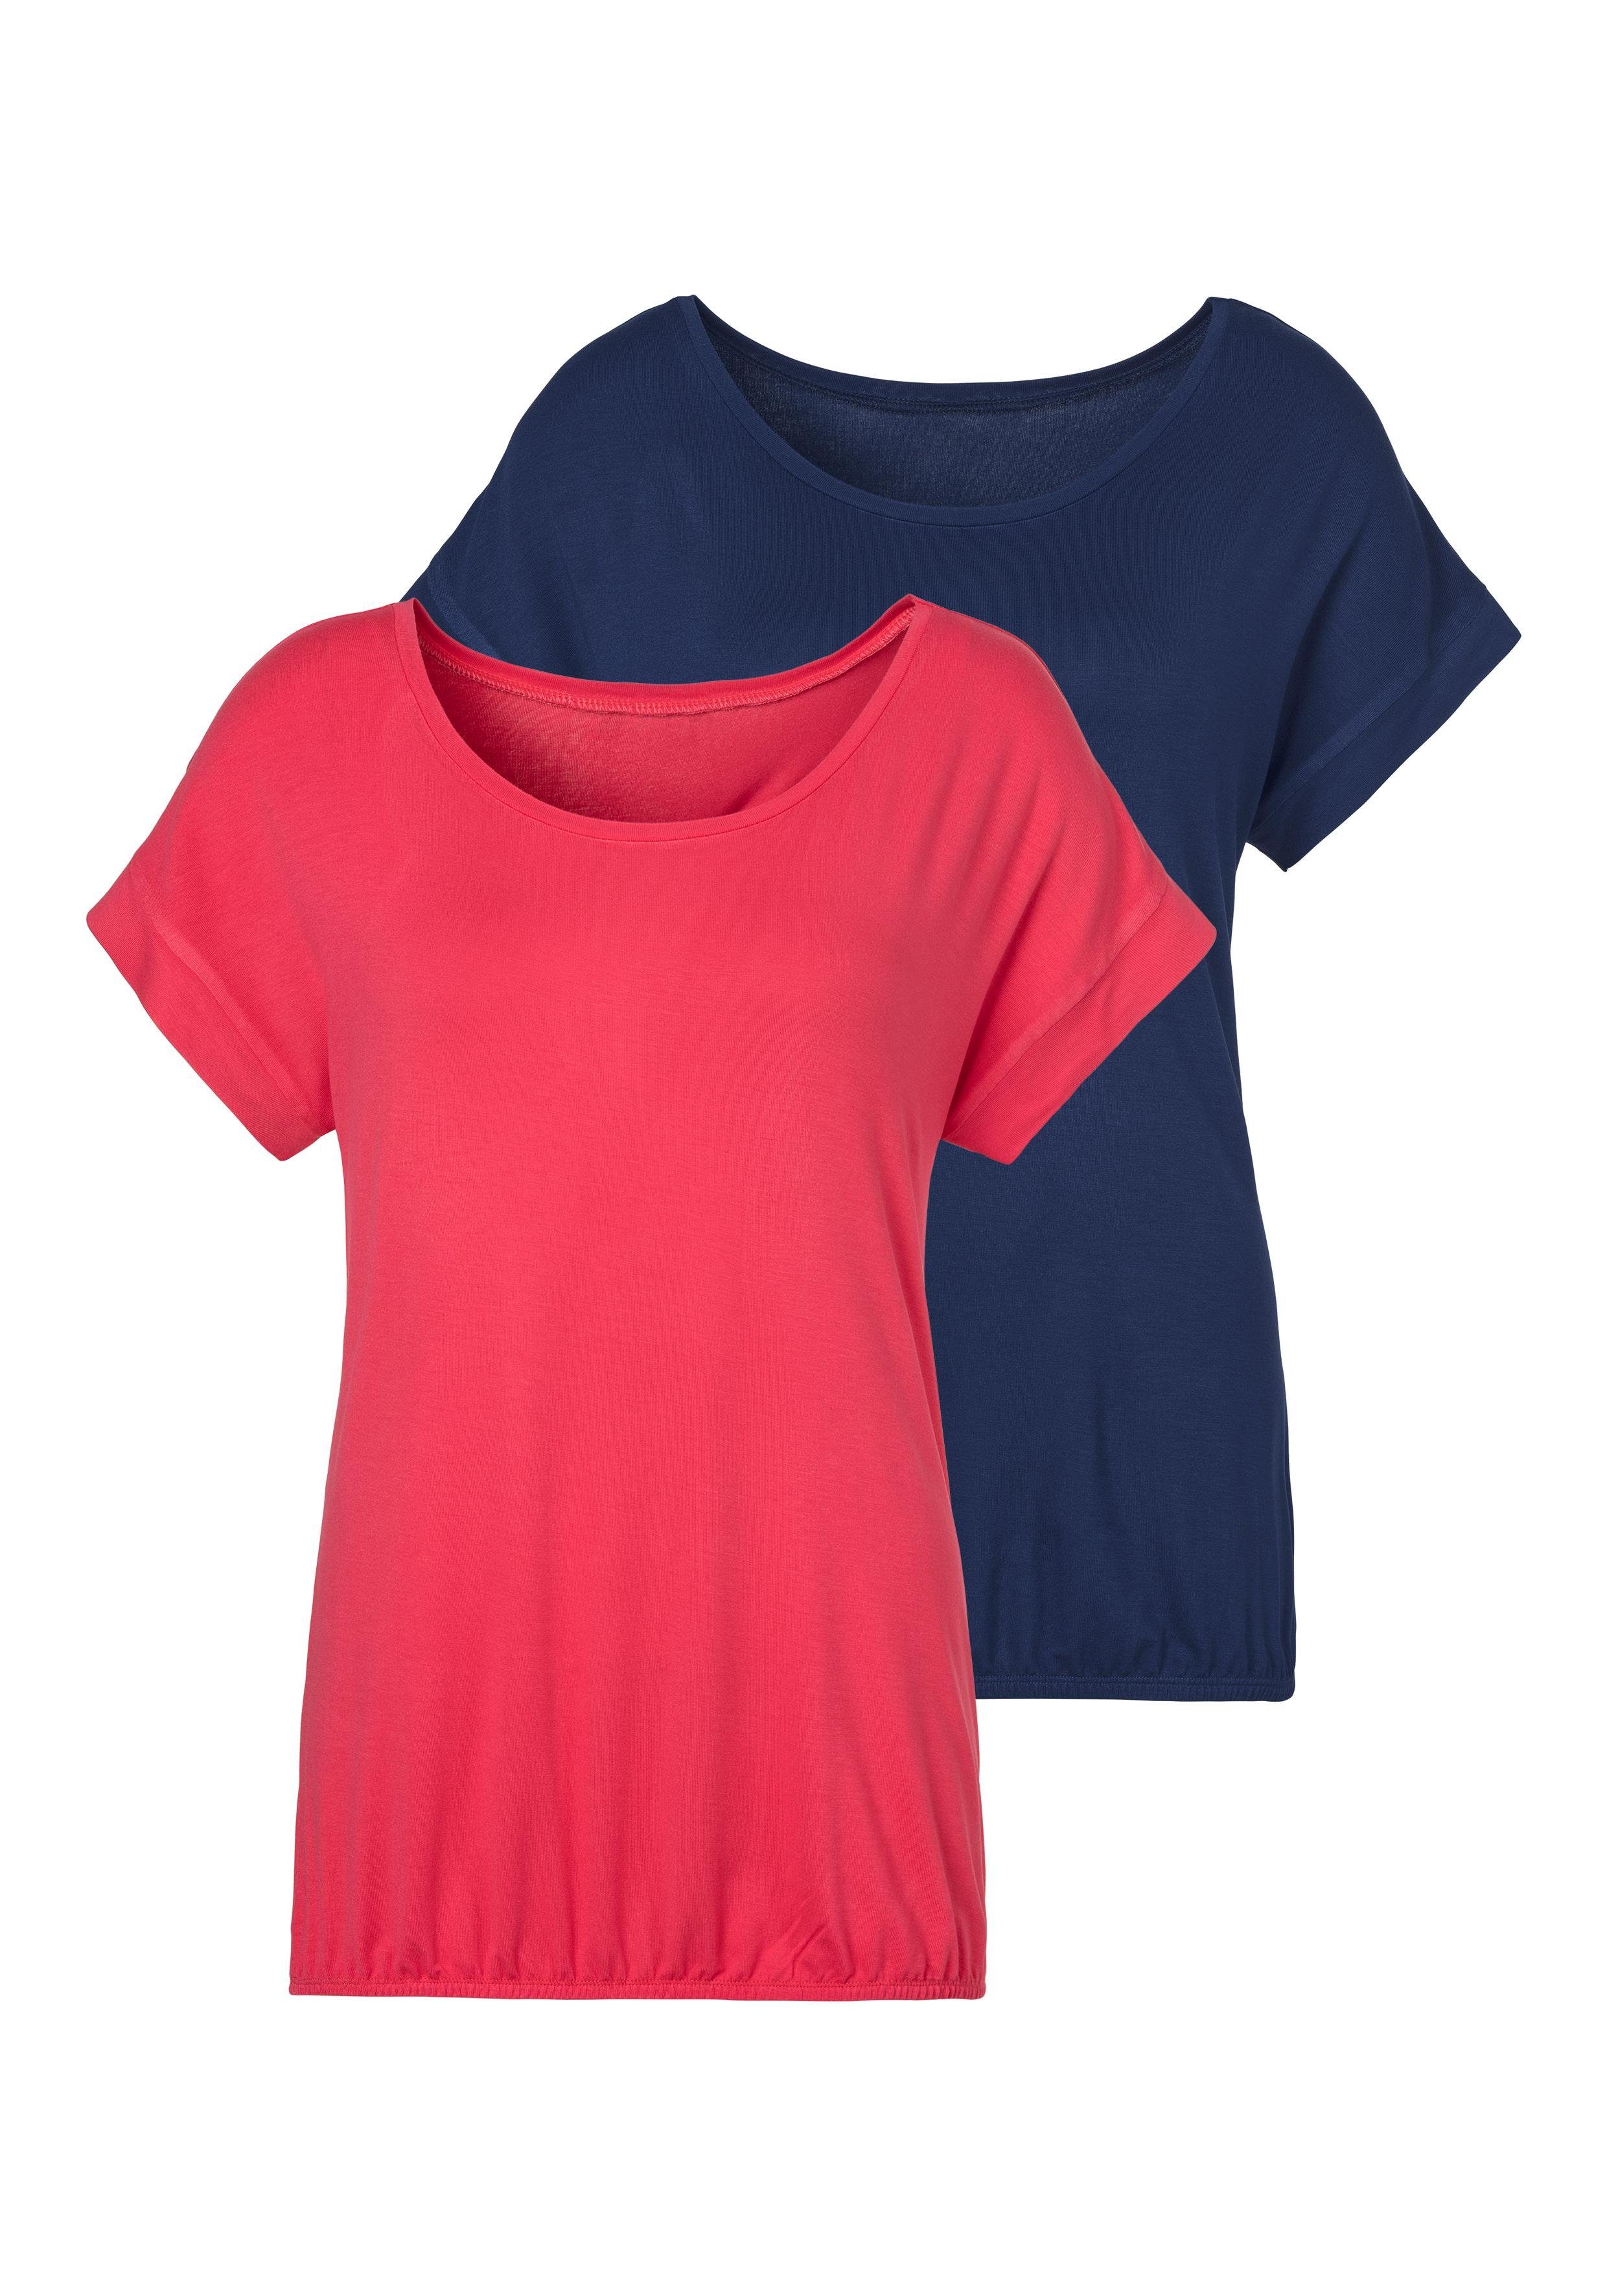 Damen T-Shirts online kaufen | OTTO